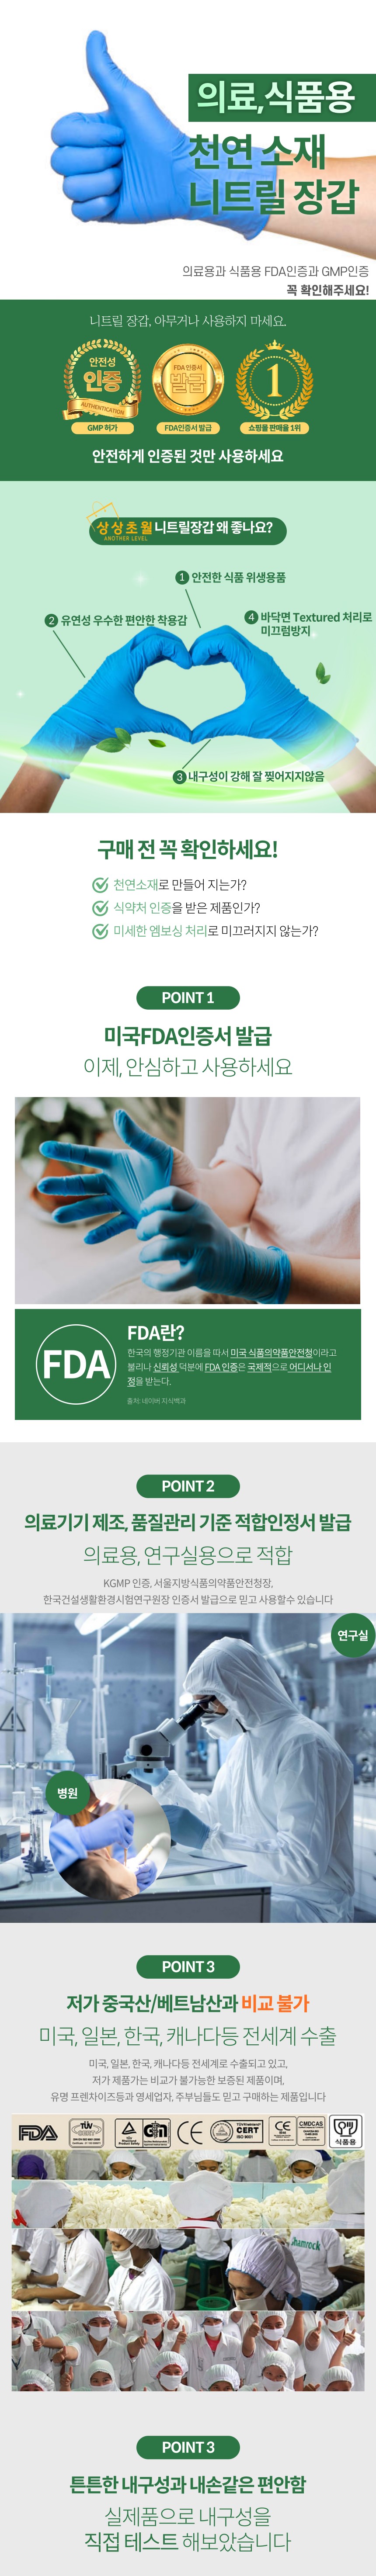 [상상초월] FDA 인정 위생 니트릴장갑